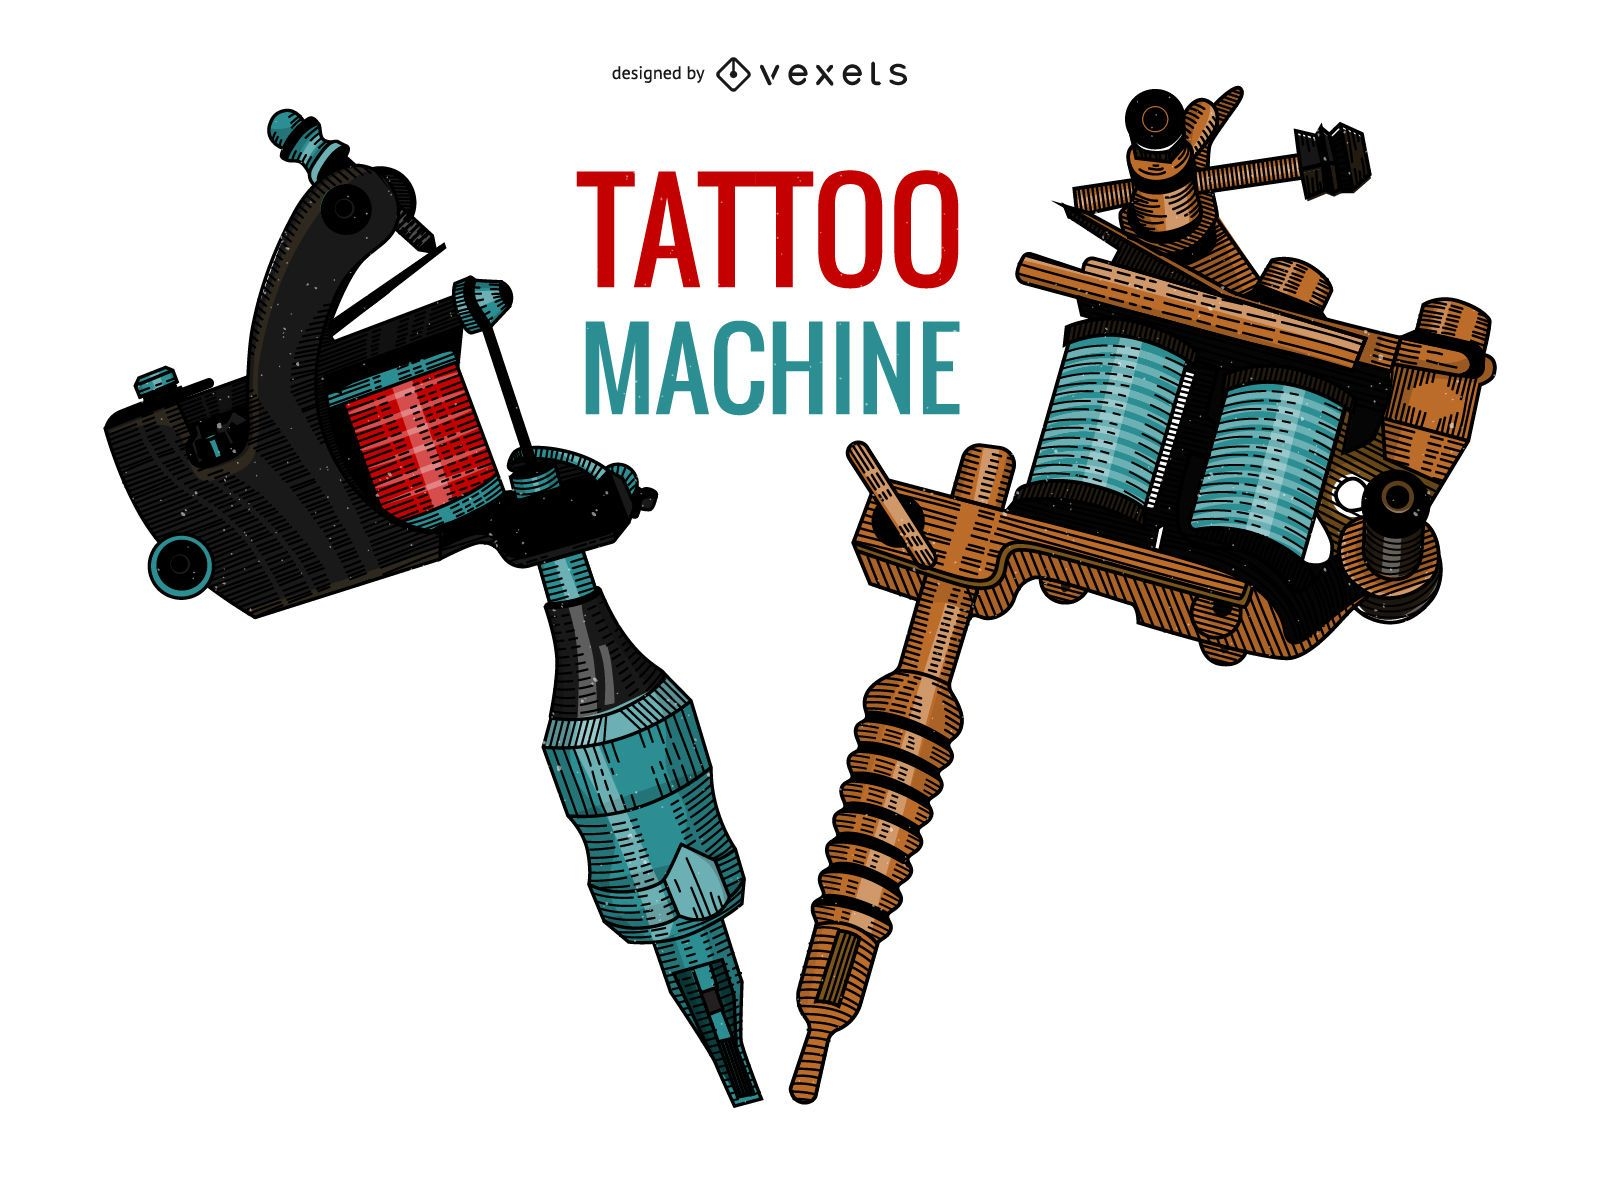 Wallpaper Tattoo Machine Vector - PIXERS.US